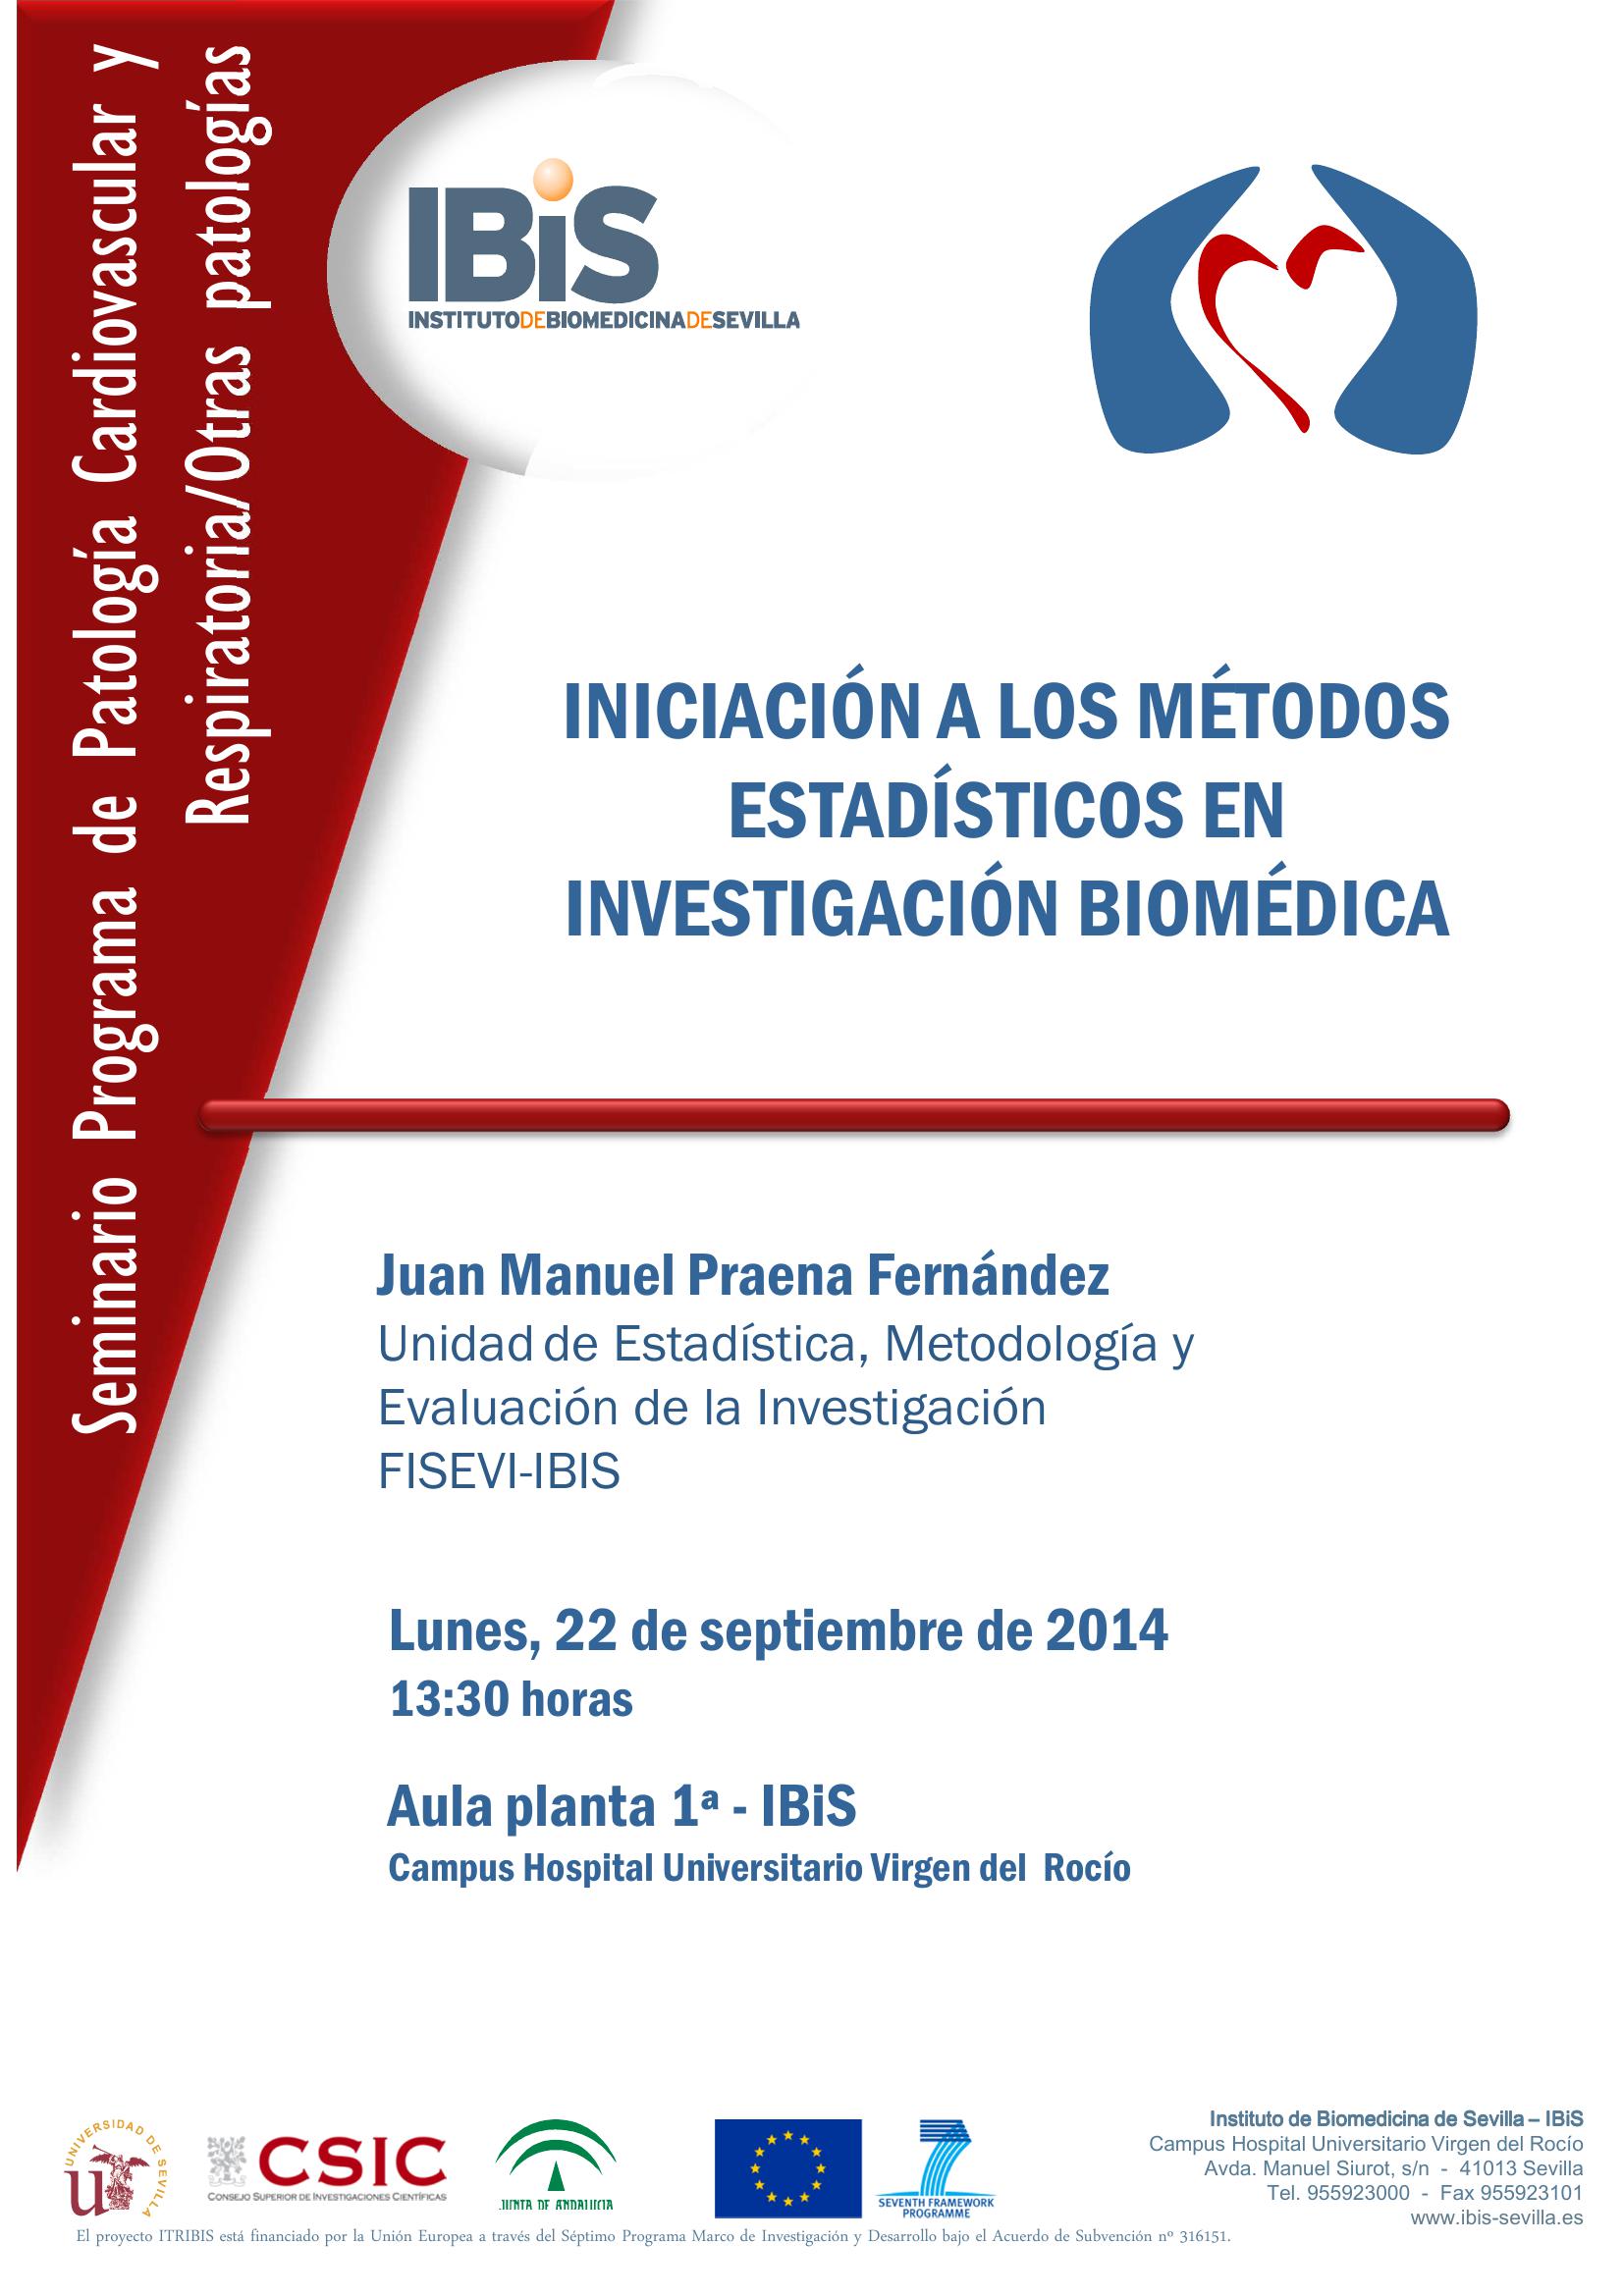 Poster: INICIACIÓN A LOS MÉTODOS ESTADÍSTICOS EN INVESTIGACIÓN BIOMÉDICA